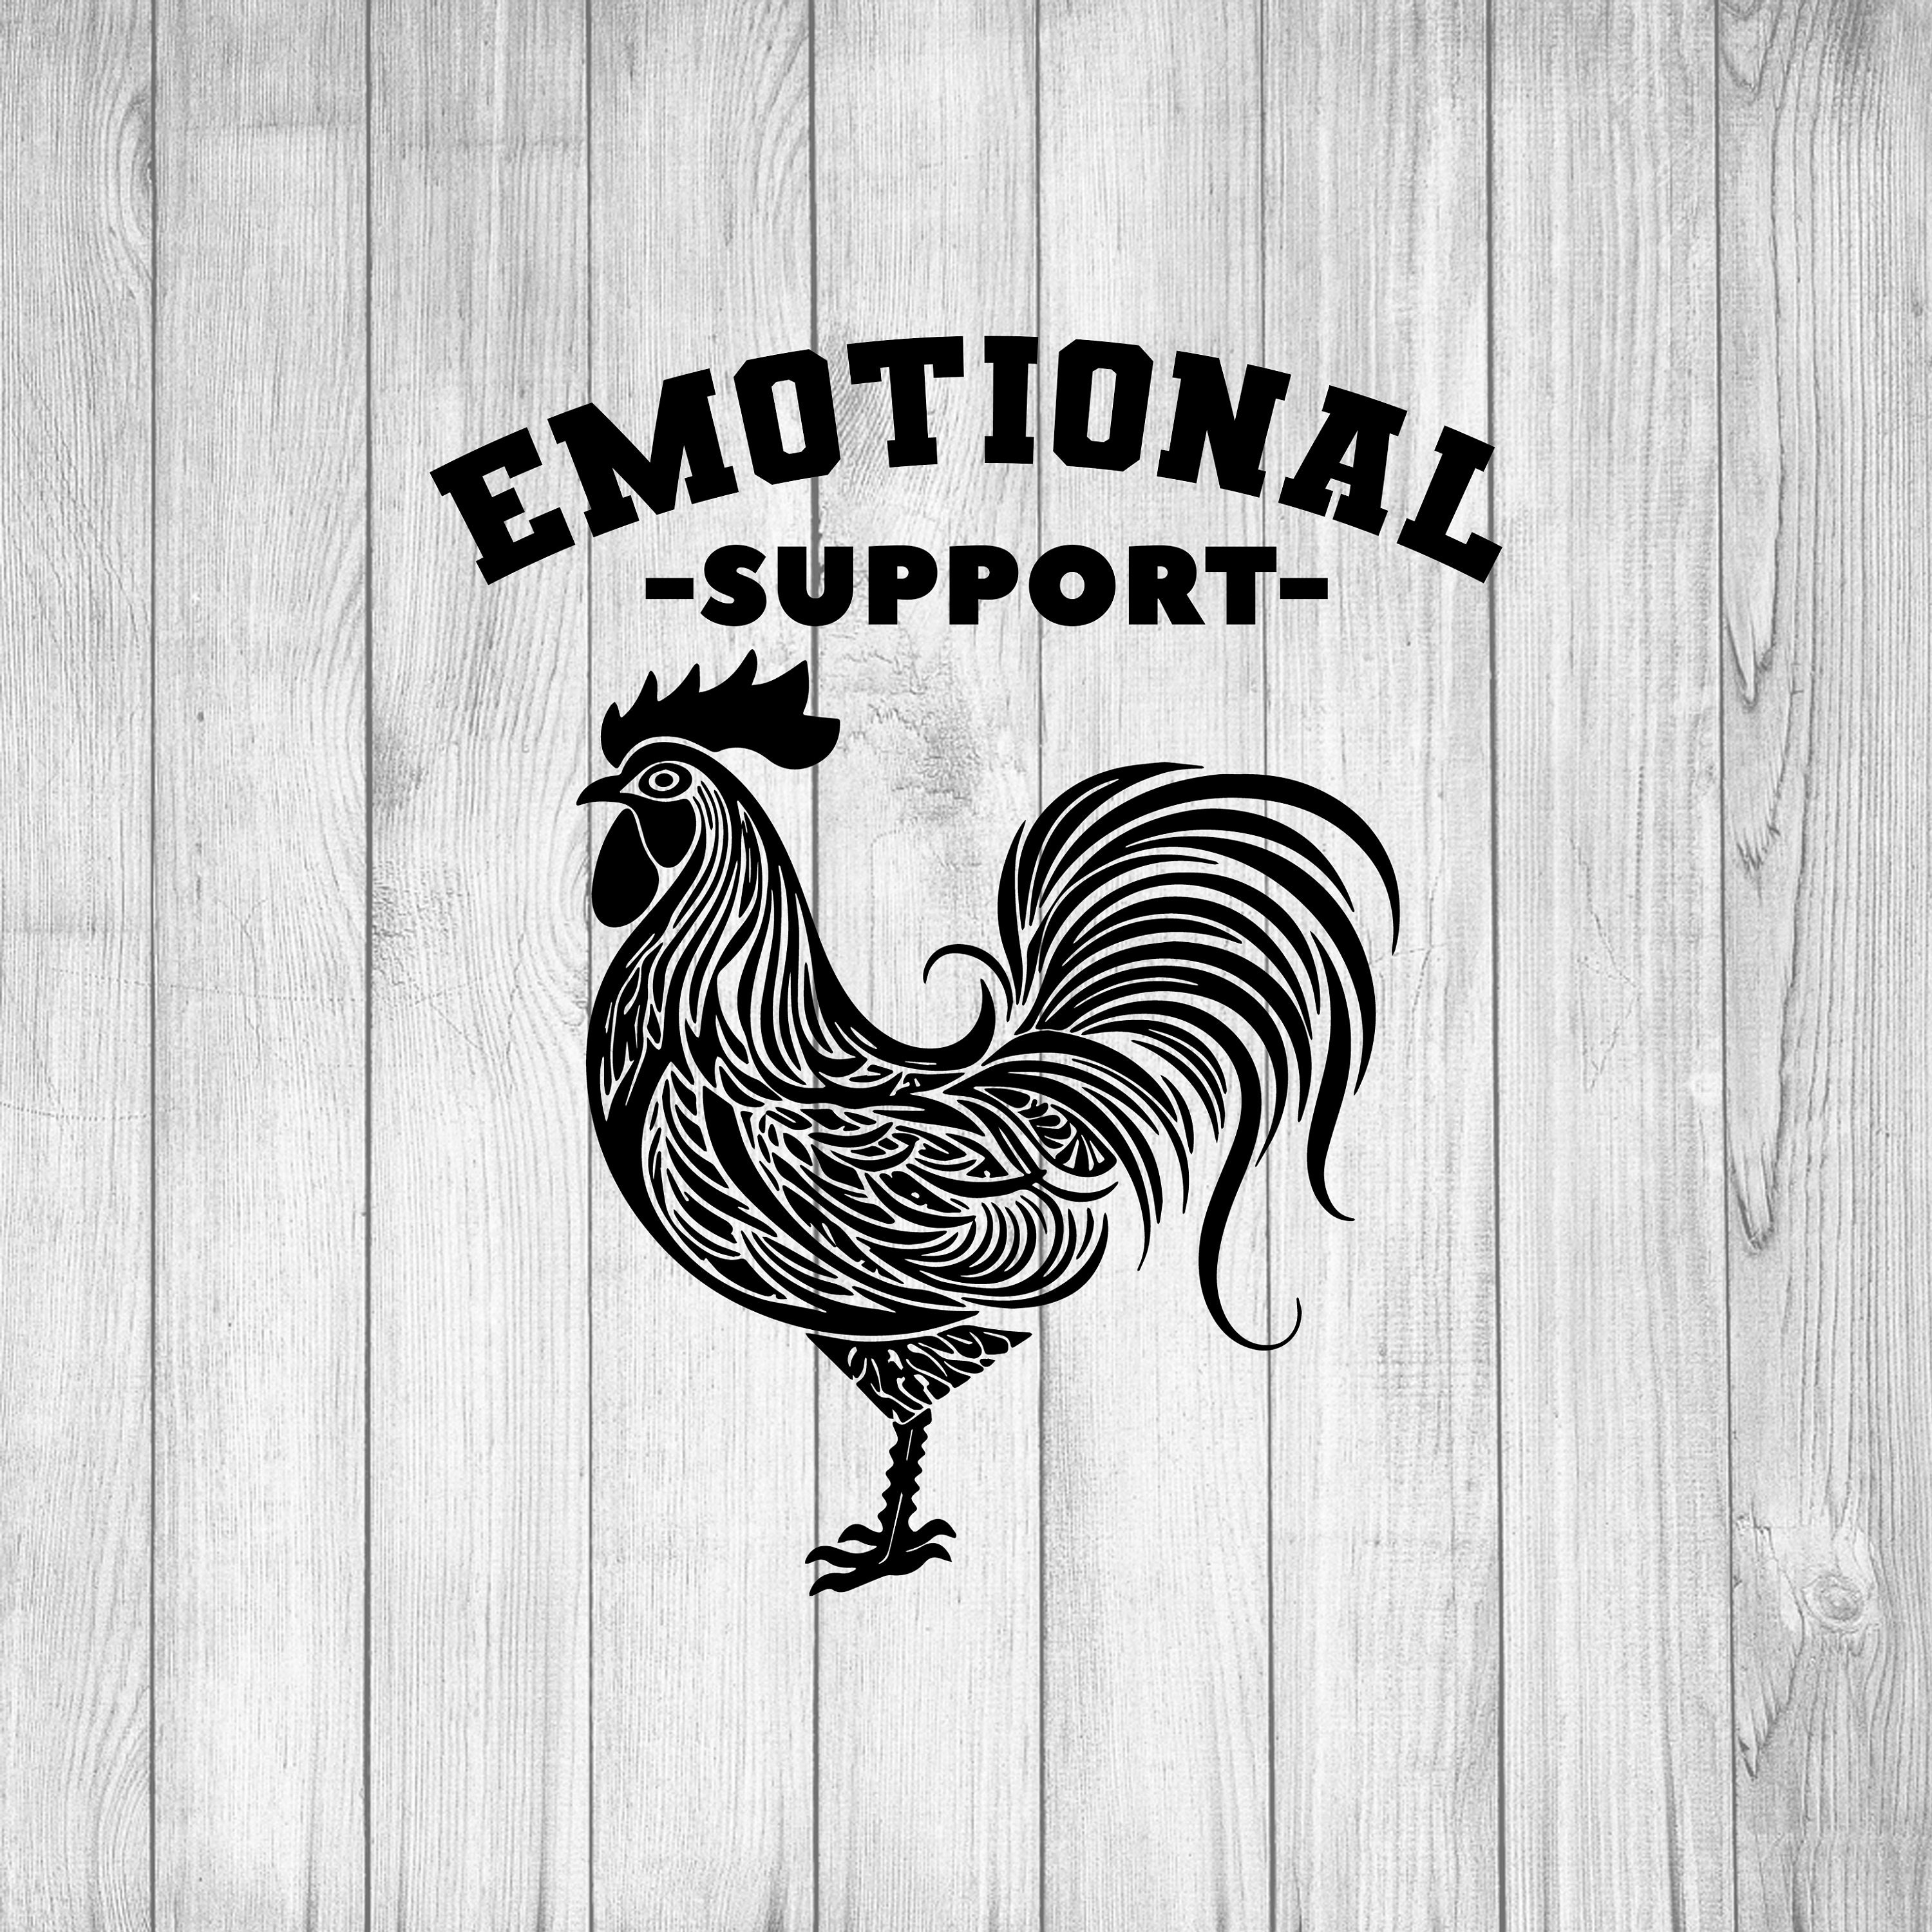 Meet Chonken, the emotional support chicken :) : r/crochet